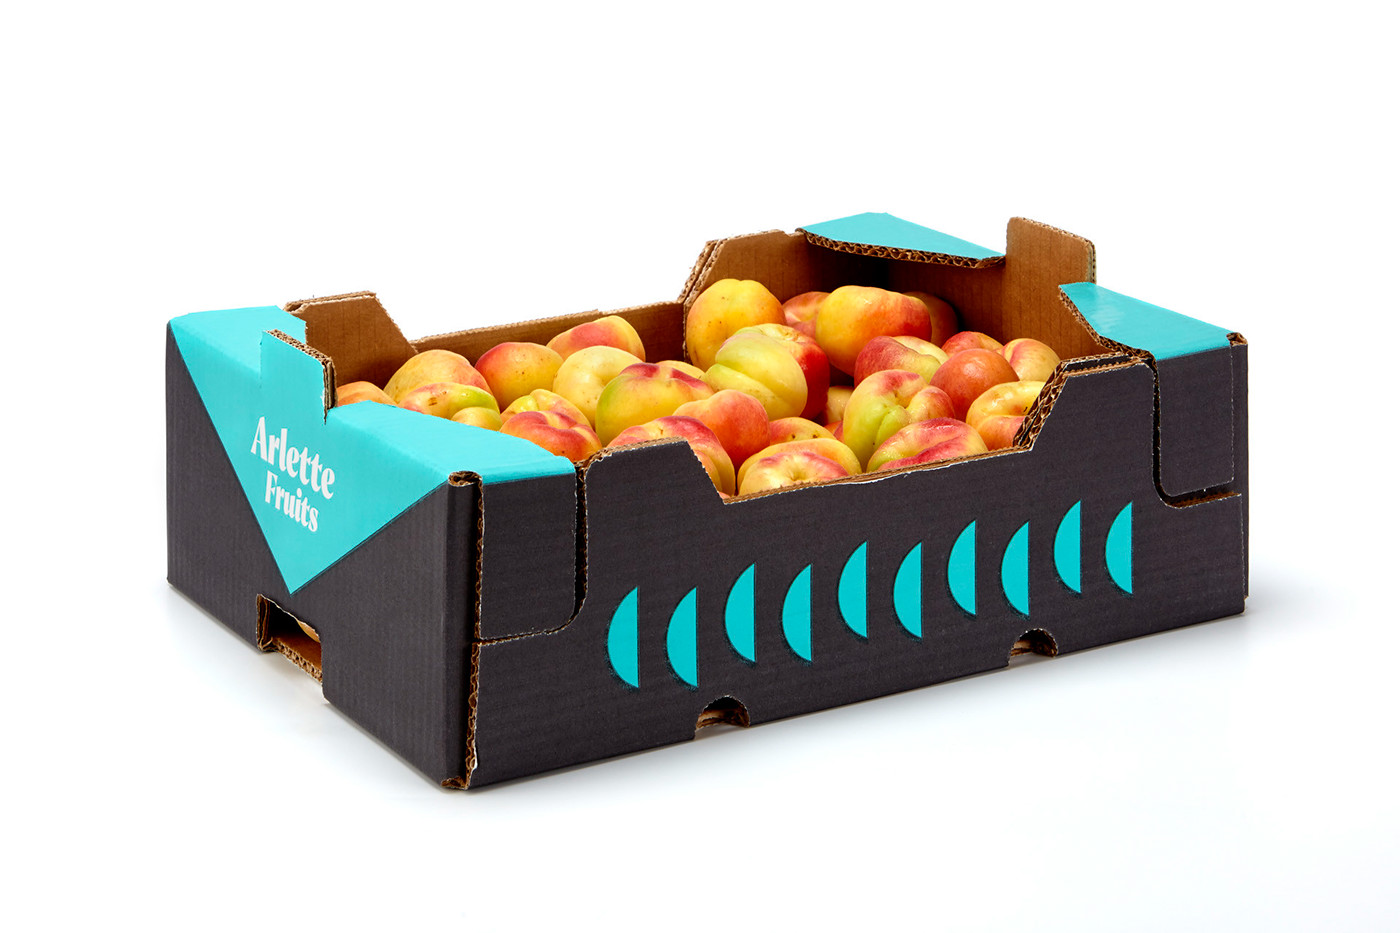 Купить фруктовые недорого. Коробки для фруктов. Коробки для овощей. Картонные коробки для овощей и фруктов. Картонная упаковка для фруктов и овощей.